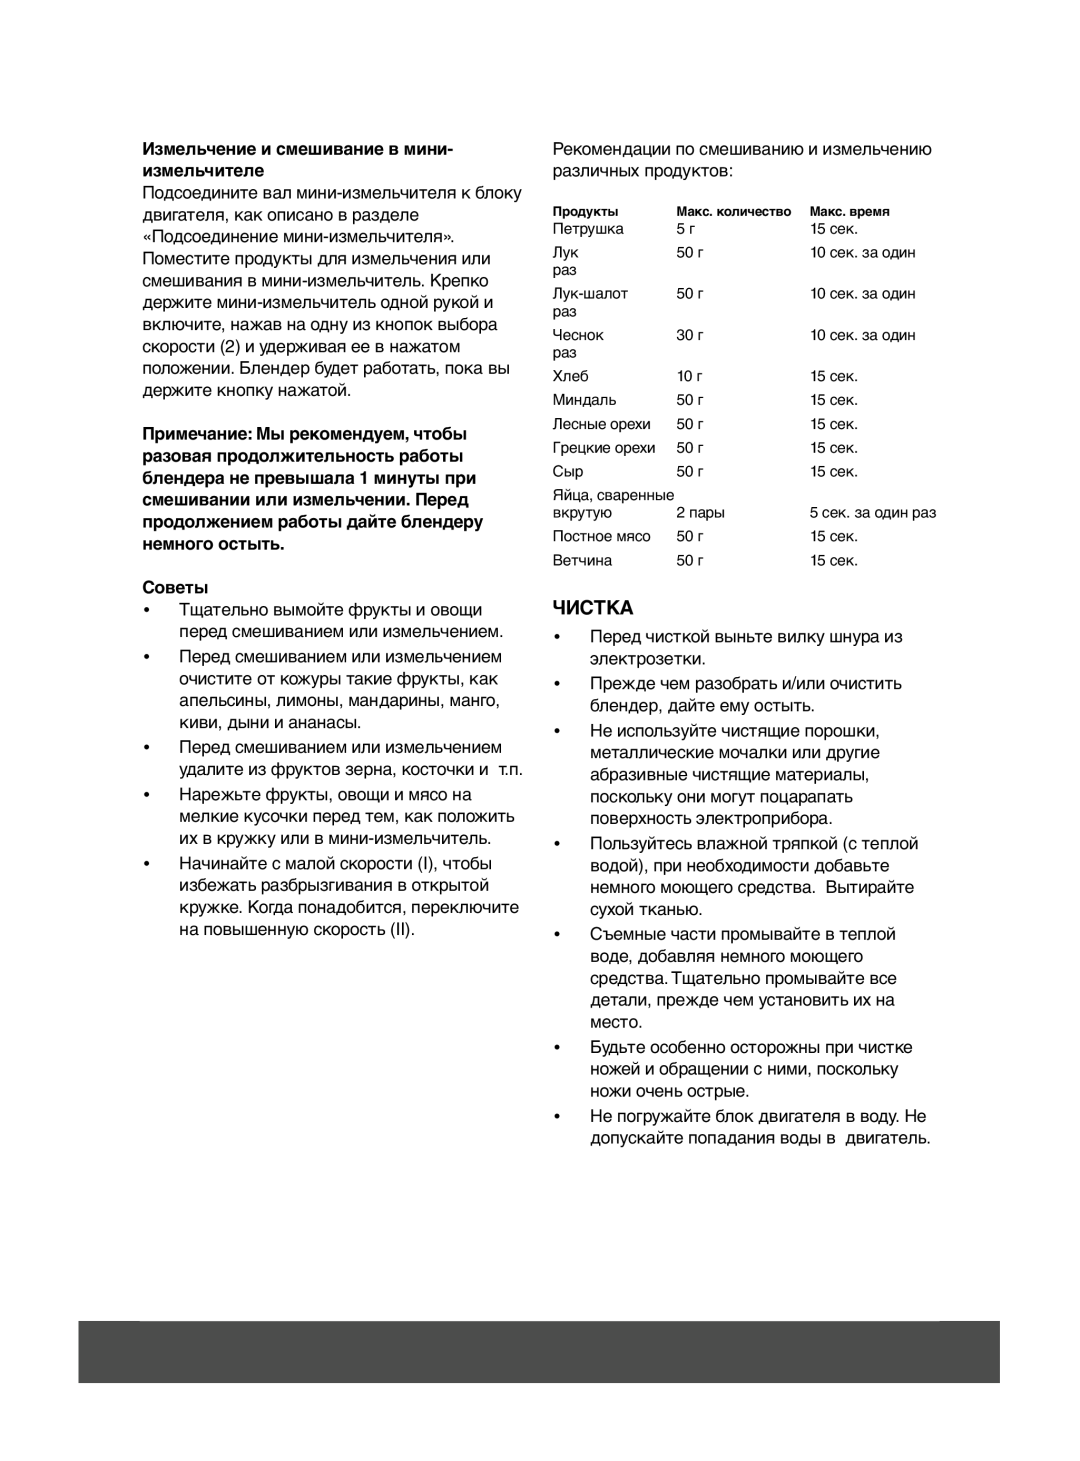 Melissa 646-036 manual Чистка, Измельчение и смешивание в мини- измельчителе, Советы 